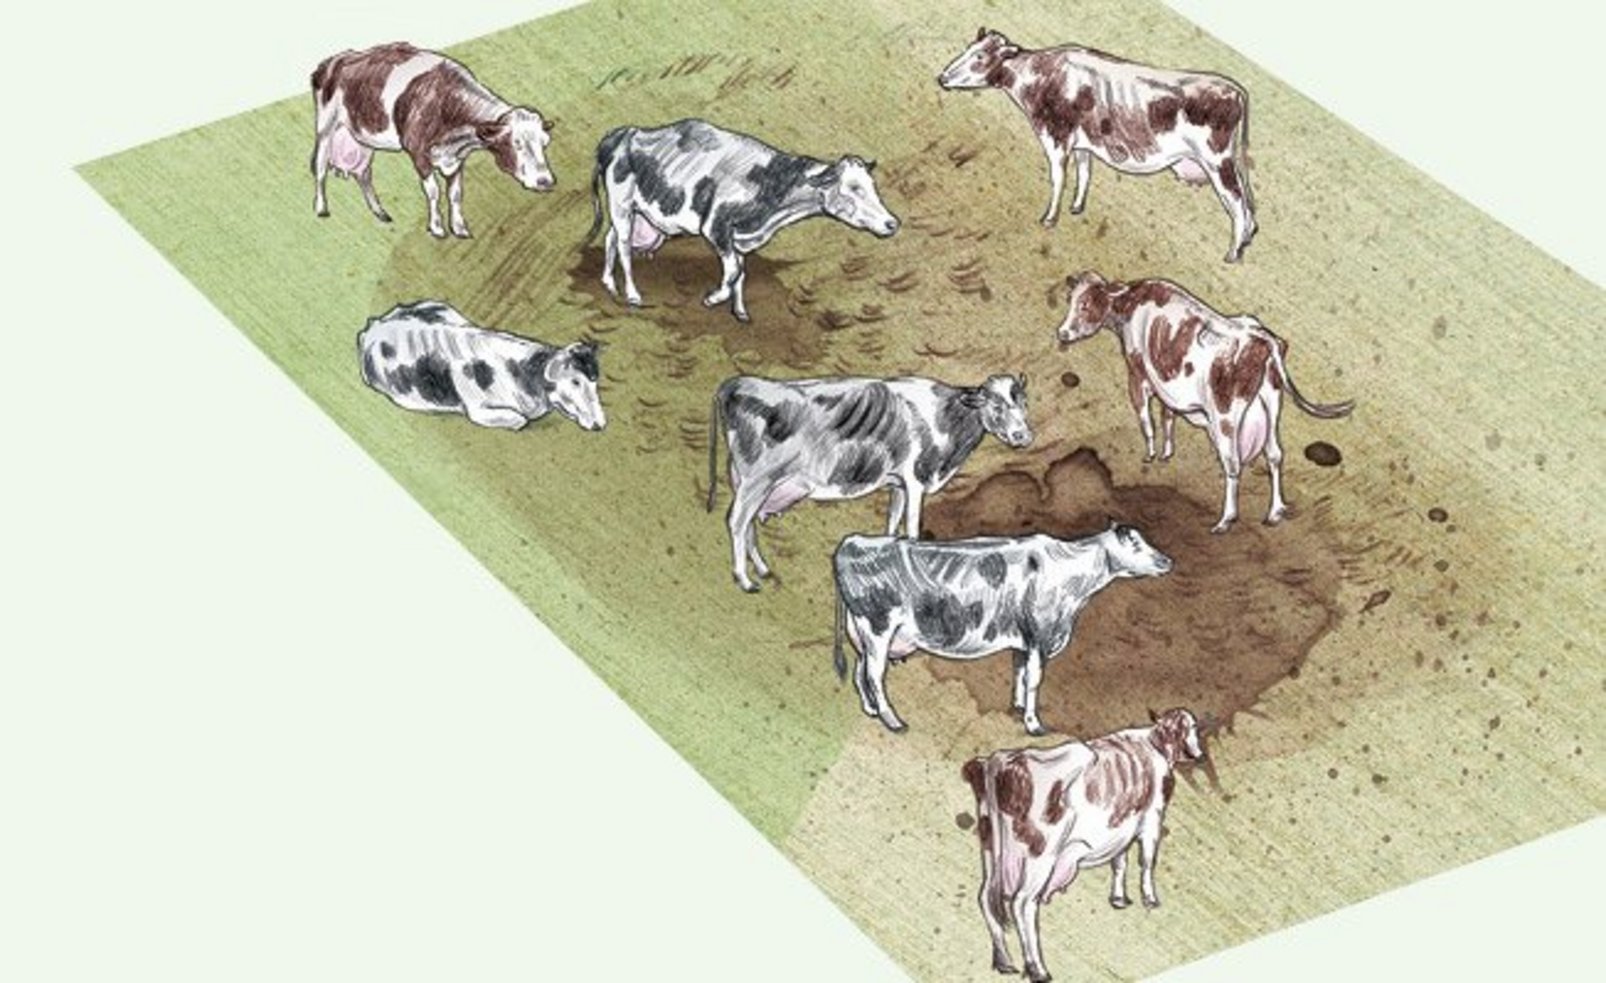 Illustration einer schlammigen Wiese auf der Kühe stehen, die ausgemärgelt aussehen.